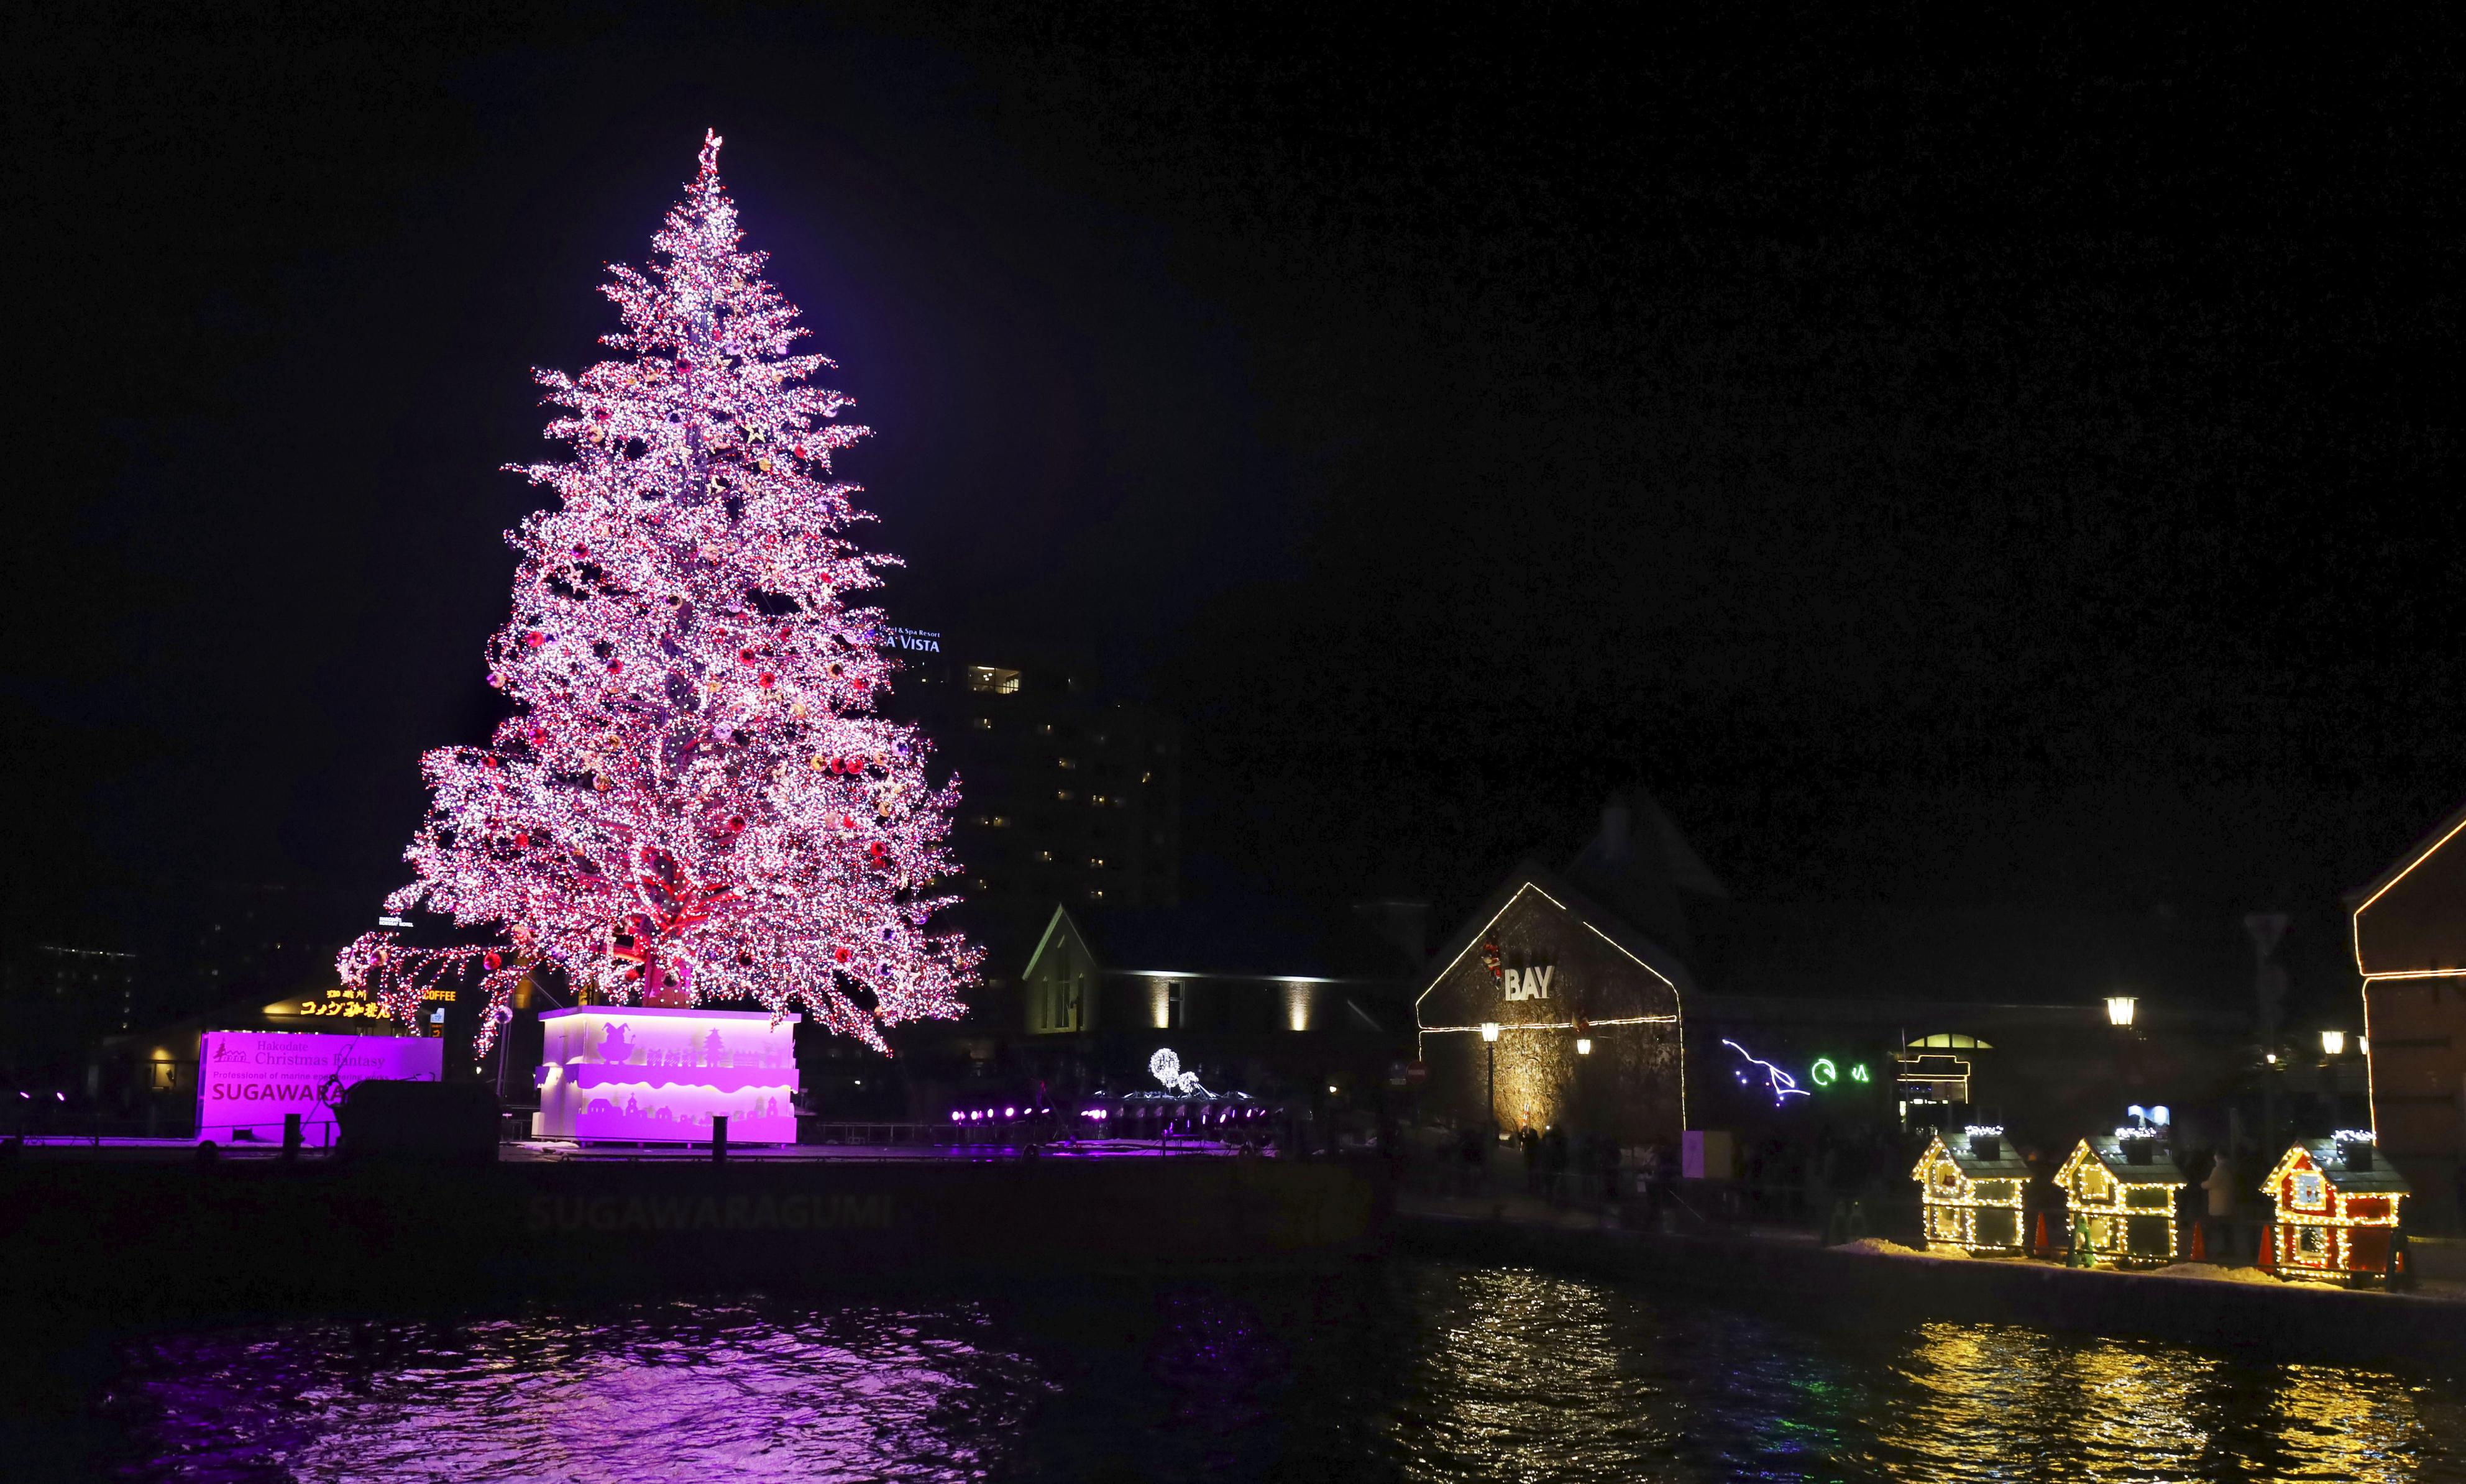 函館の夜彩る巨大ツリー 観光客ら一足早く「メリークリスマス」 - 産経ニュース